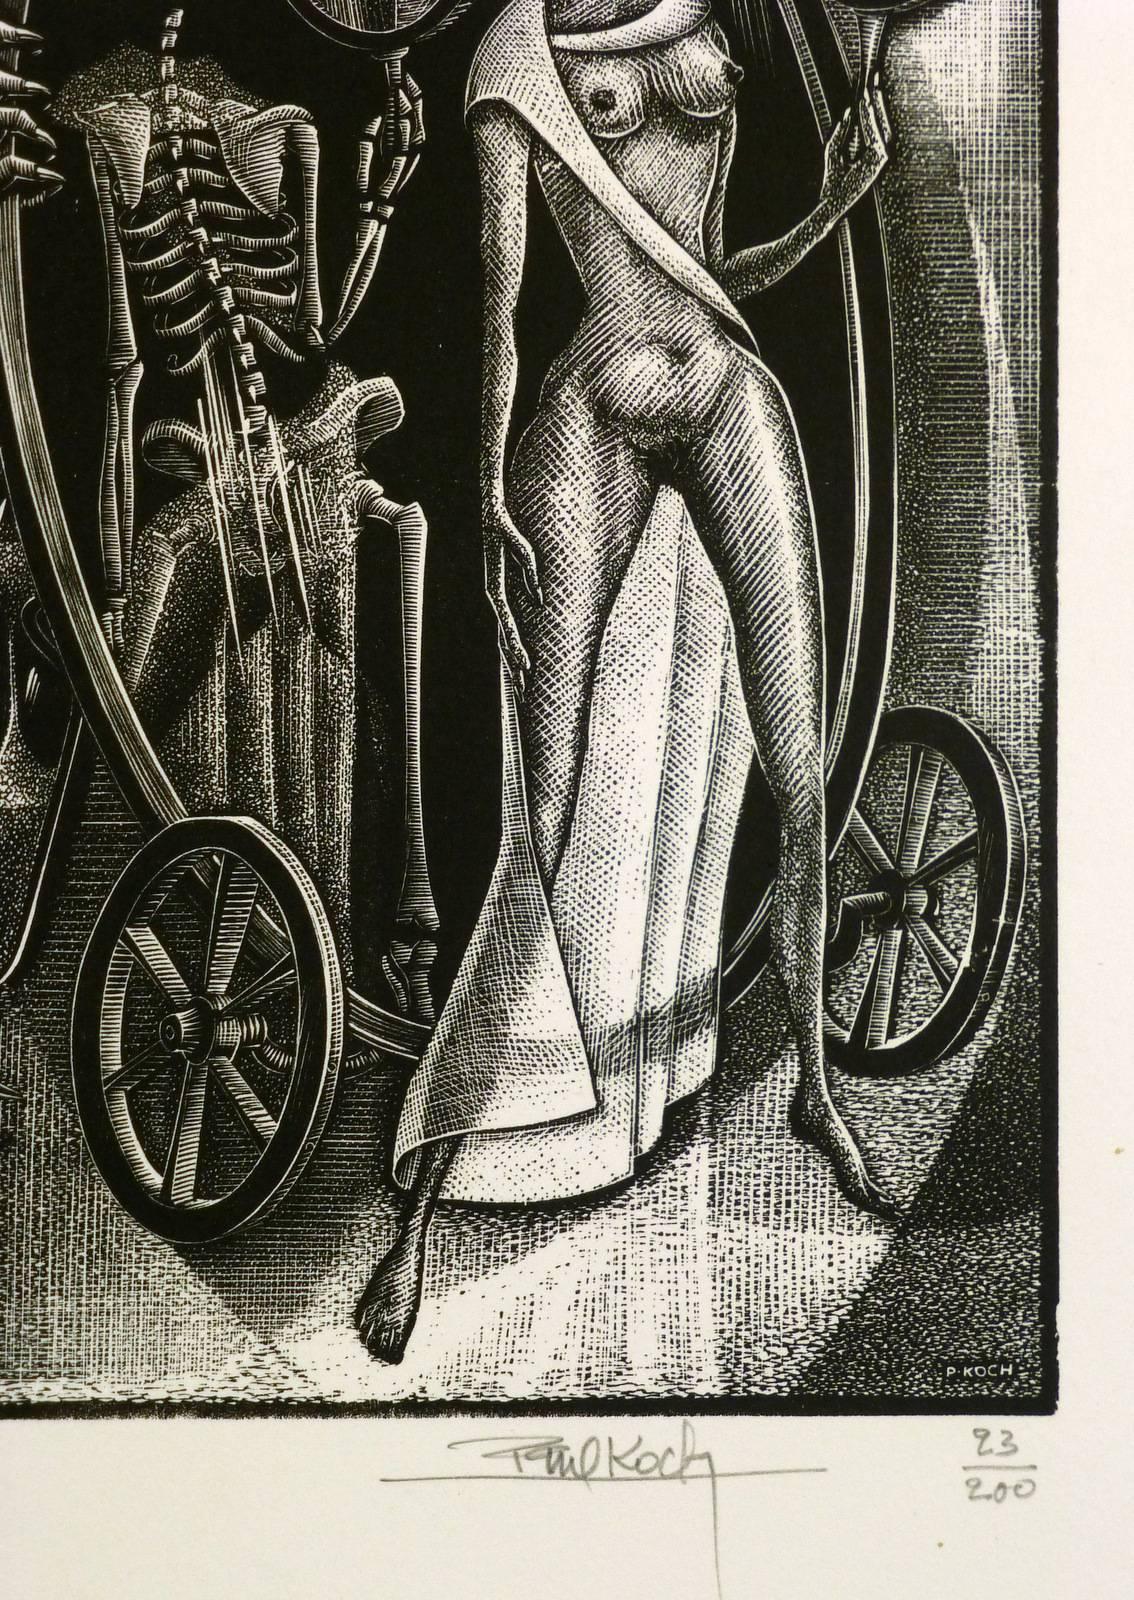 Female Figure and Skeletal Woodcut - Print by Paul Koch